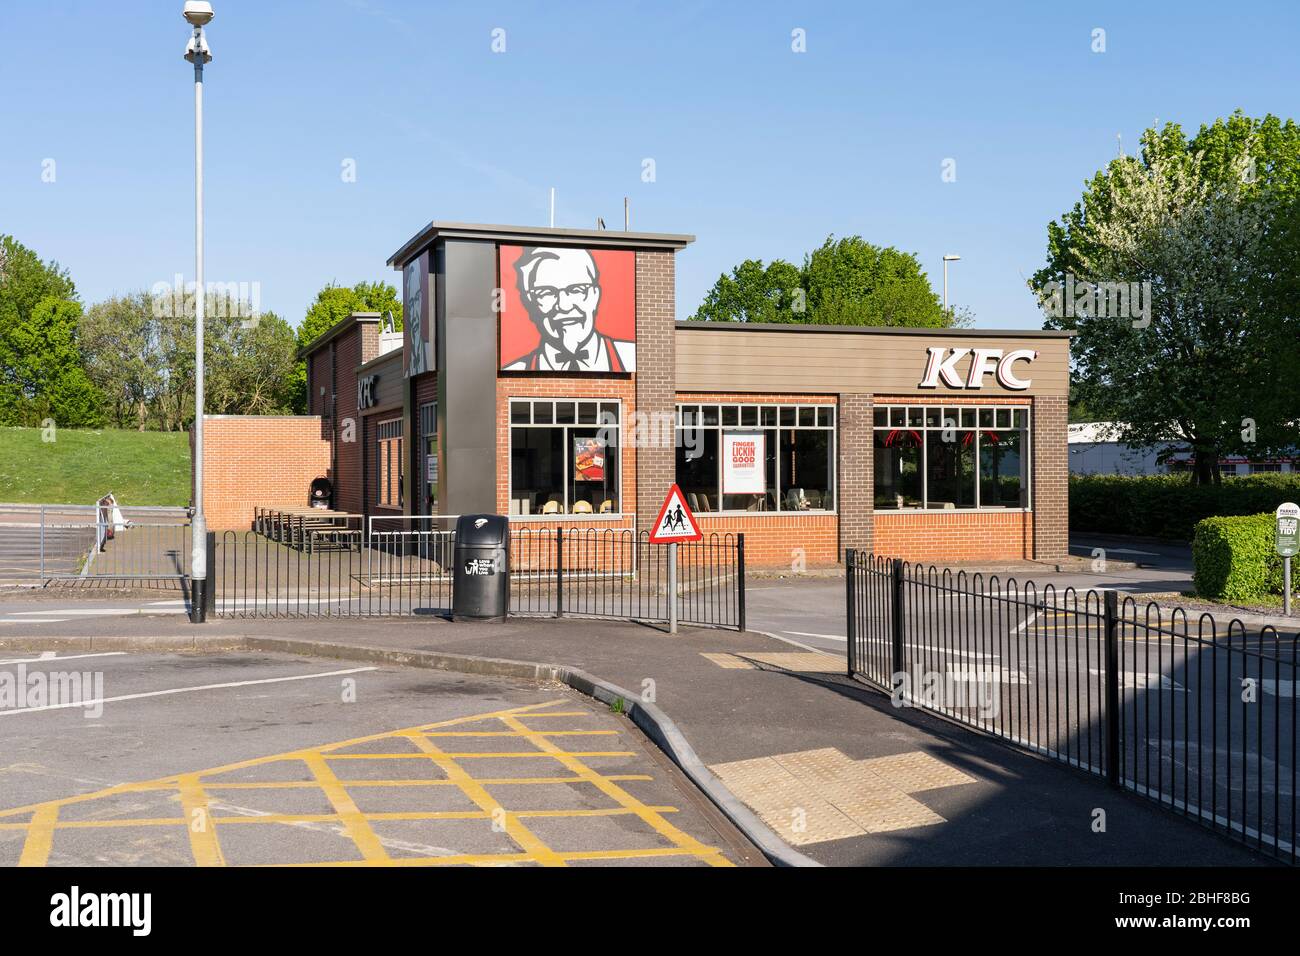 Un KFC traverse une chaîne alimentaire rapide fermée et abandonnée sans clients en raison de la pandémie de Covid 19 de Coronavirus. Basingstoke, avril 2020 Banque D'Images